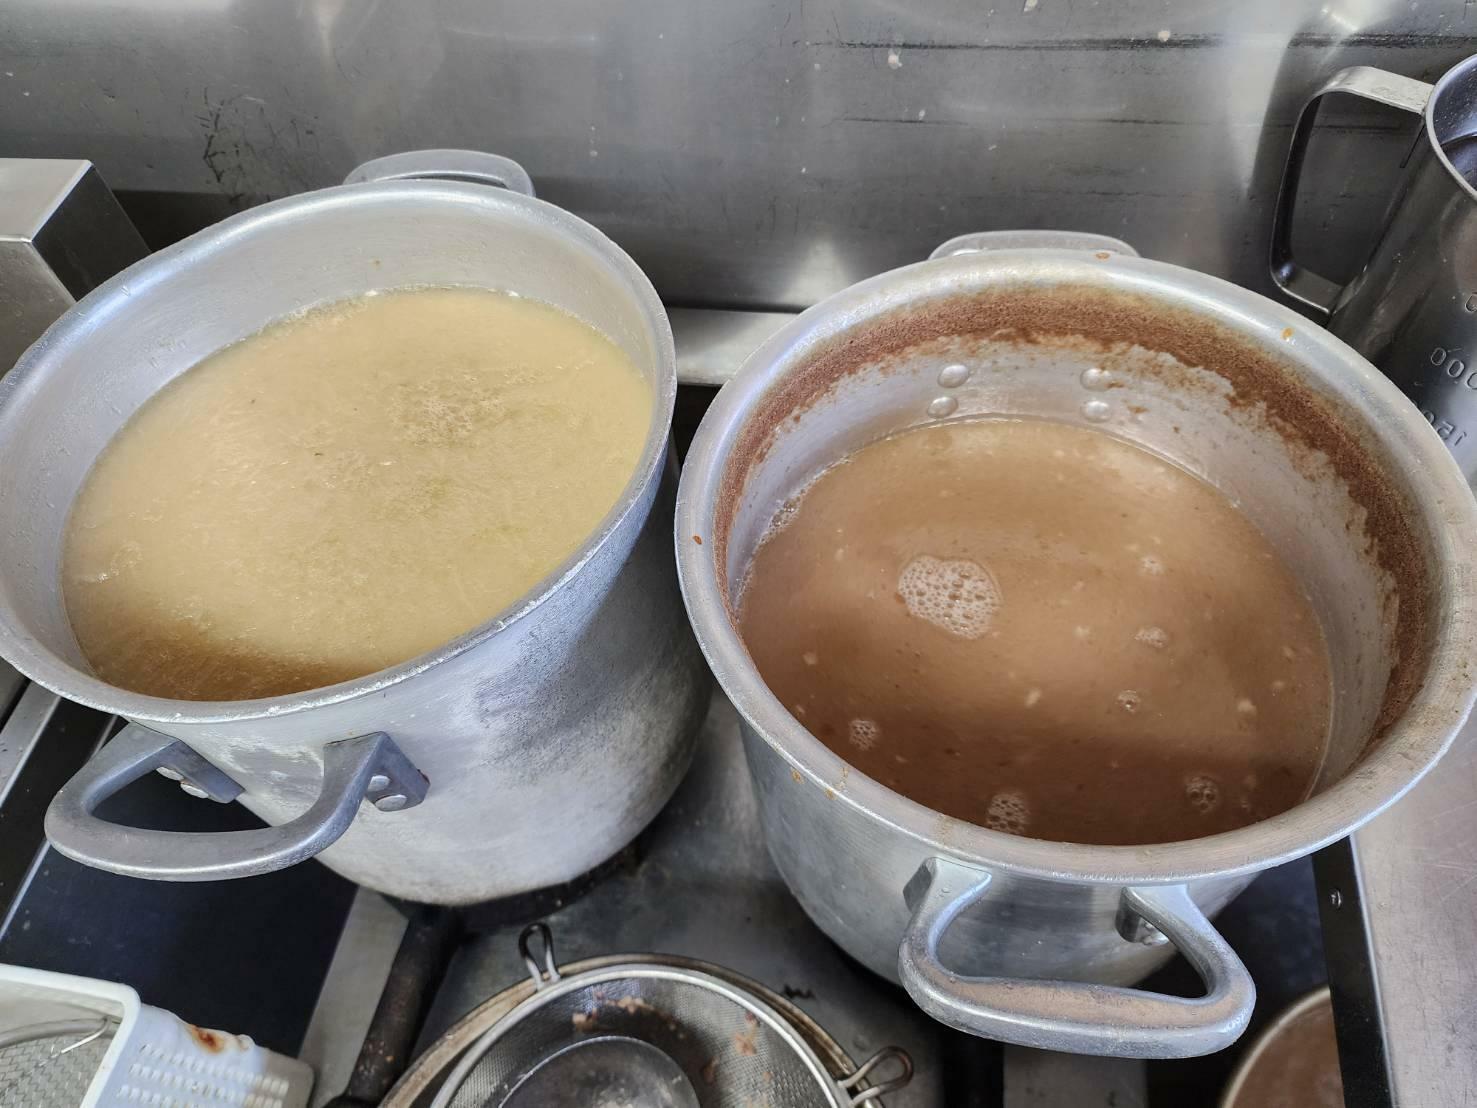 左が「白」、右が定番「ラーメン」のスープ。右は醤油と合わさる前から深い茶濁になっている